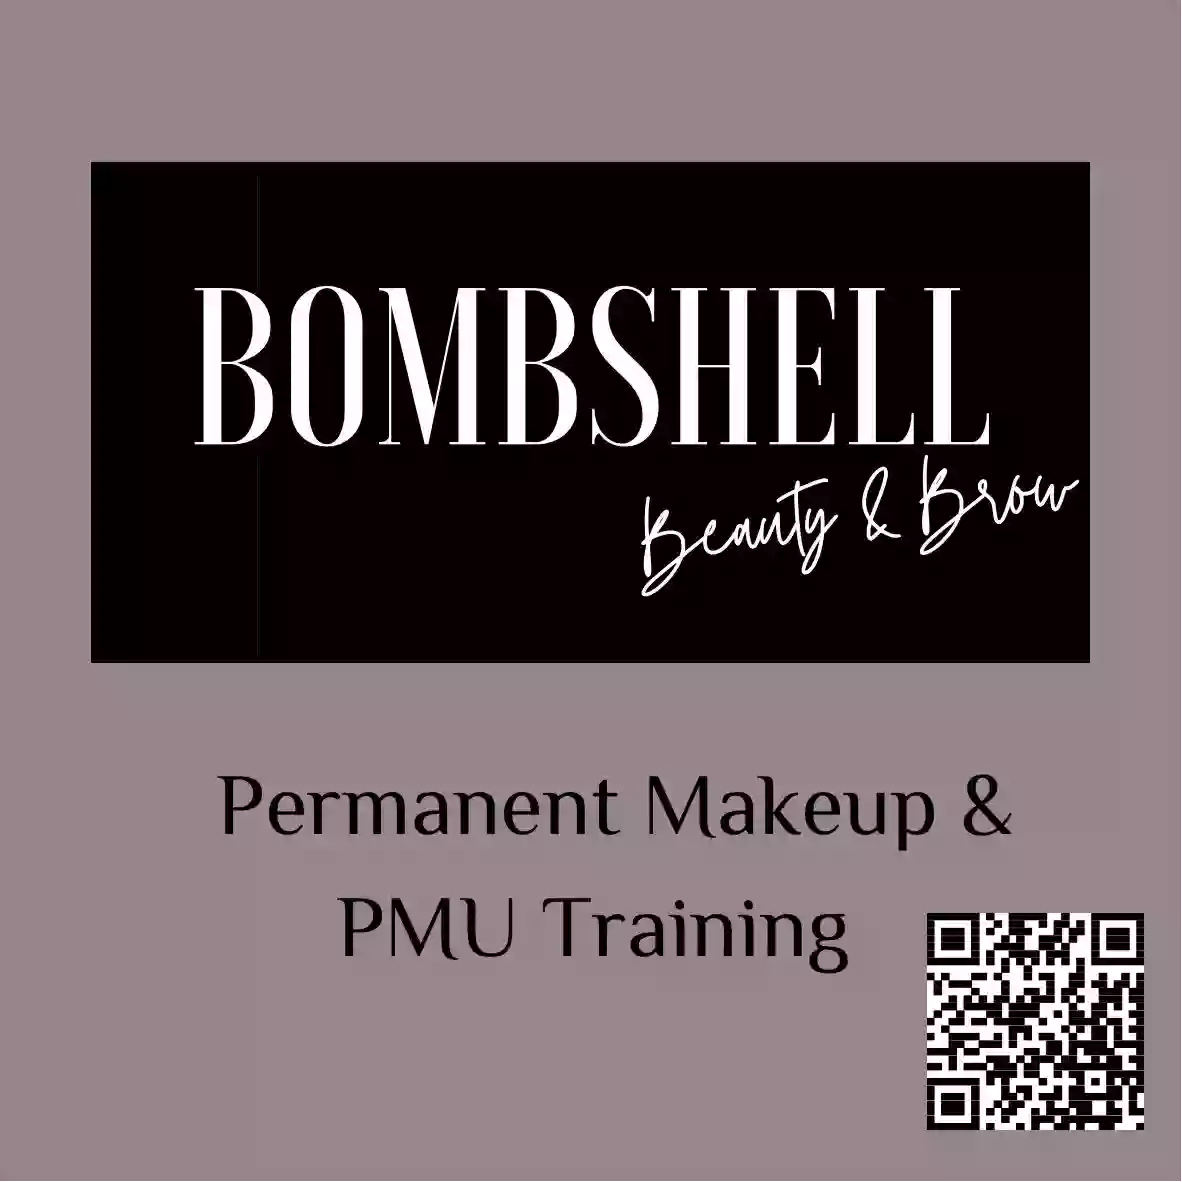 Bombshell Beauty & Brow Studio